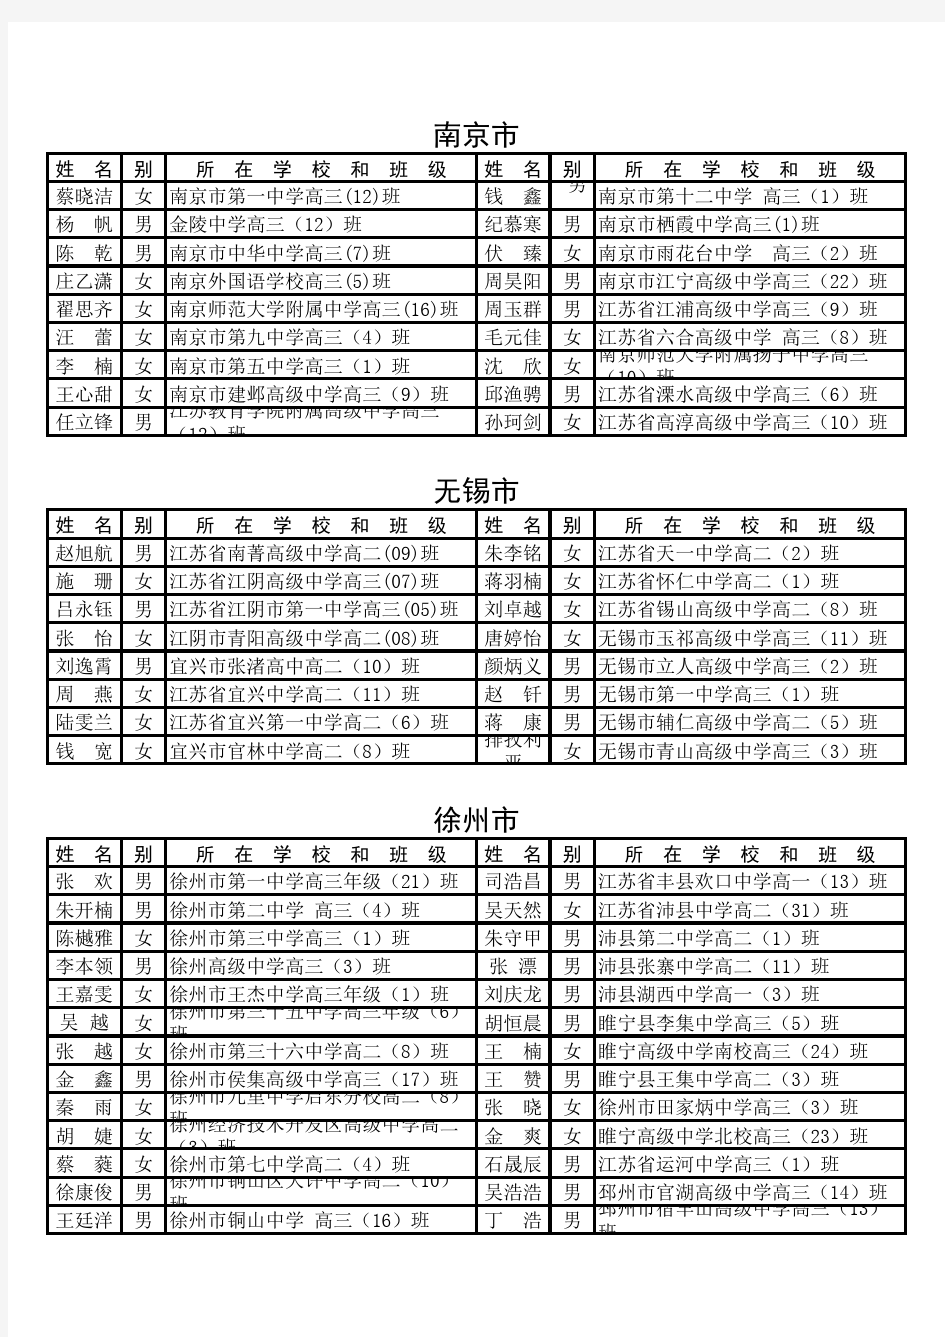 拟评为江苏省级优秀学生干部的学生名单